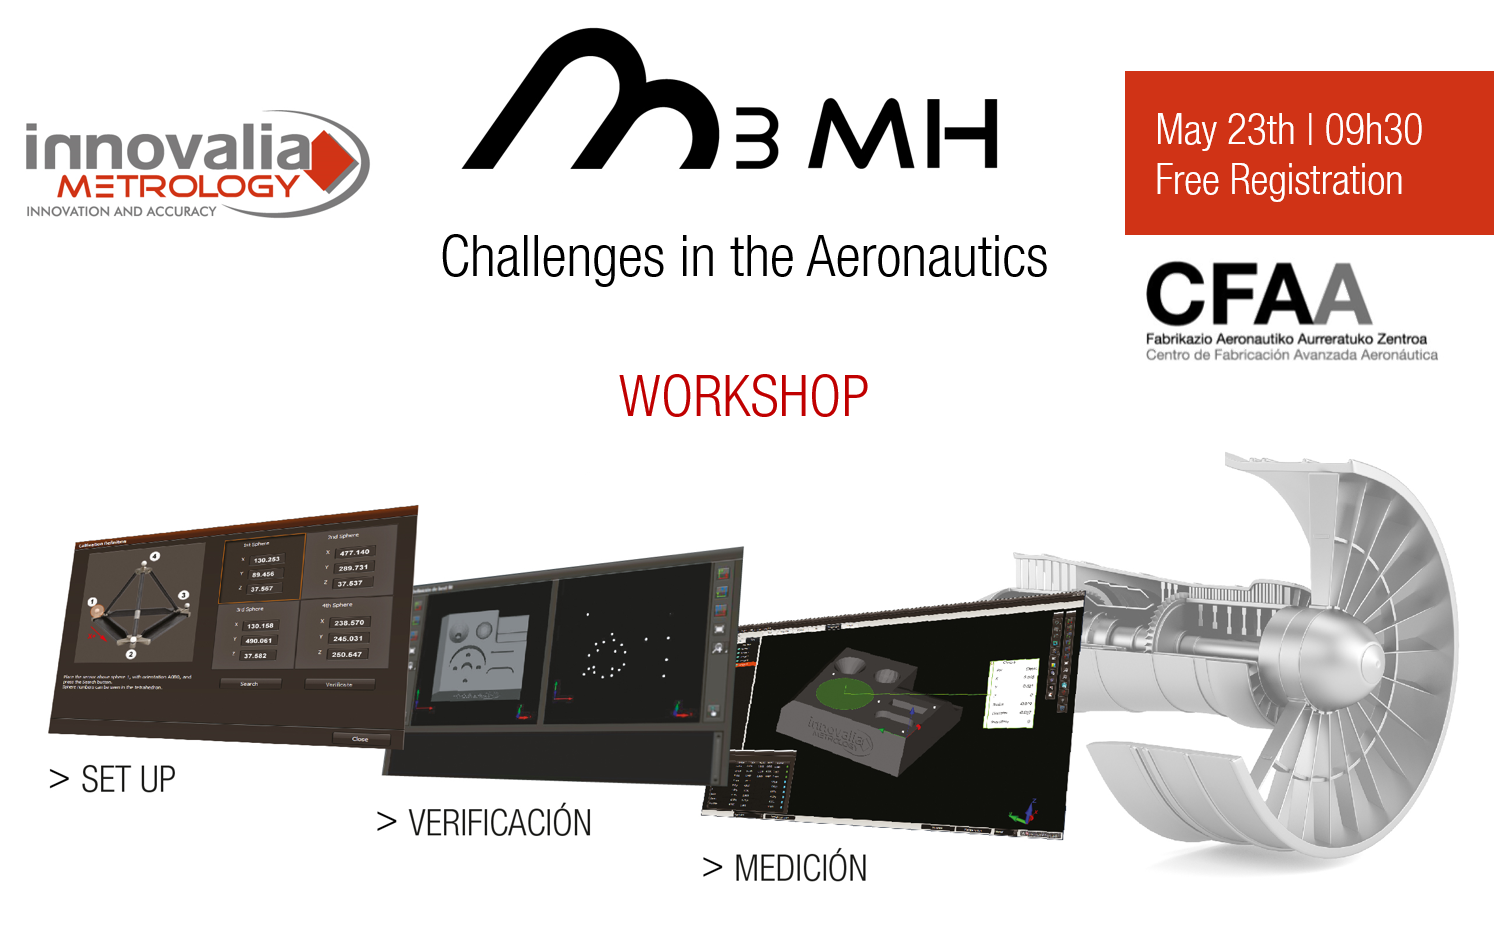 Innovalia Metrology te invita el 23 de mayo a descubrir nueva tecnología para abordar los desafíos del sector aeronáutico en un Workshop único en el CFAA